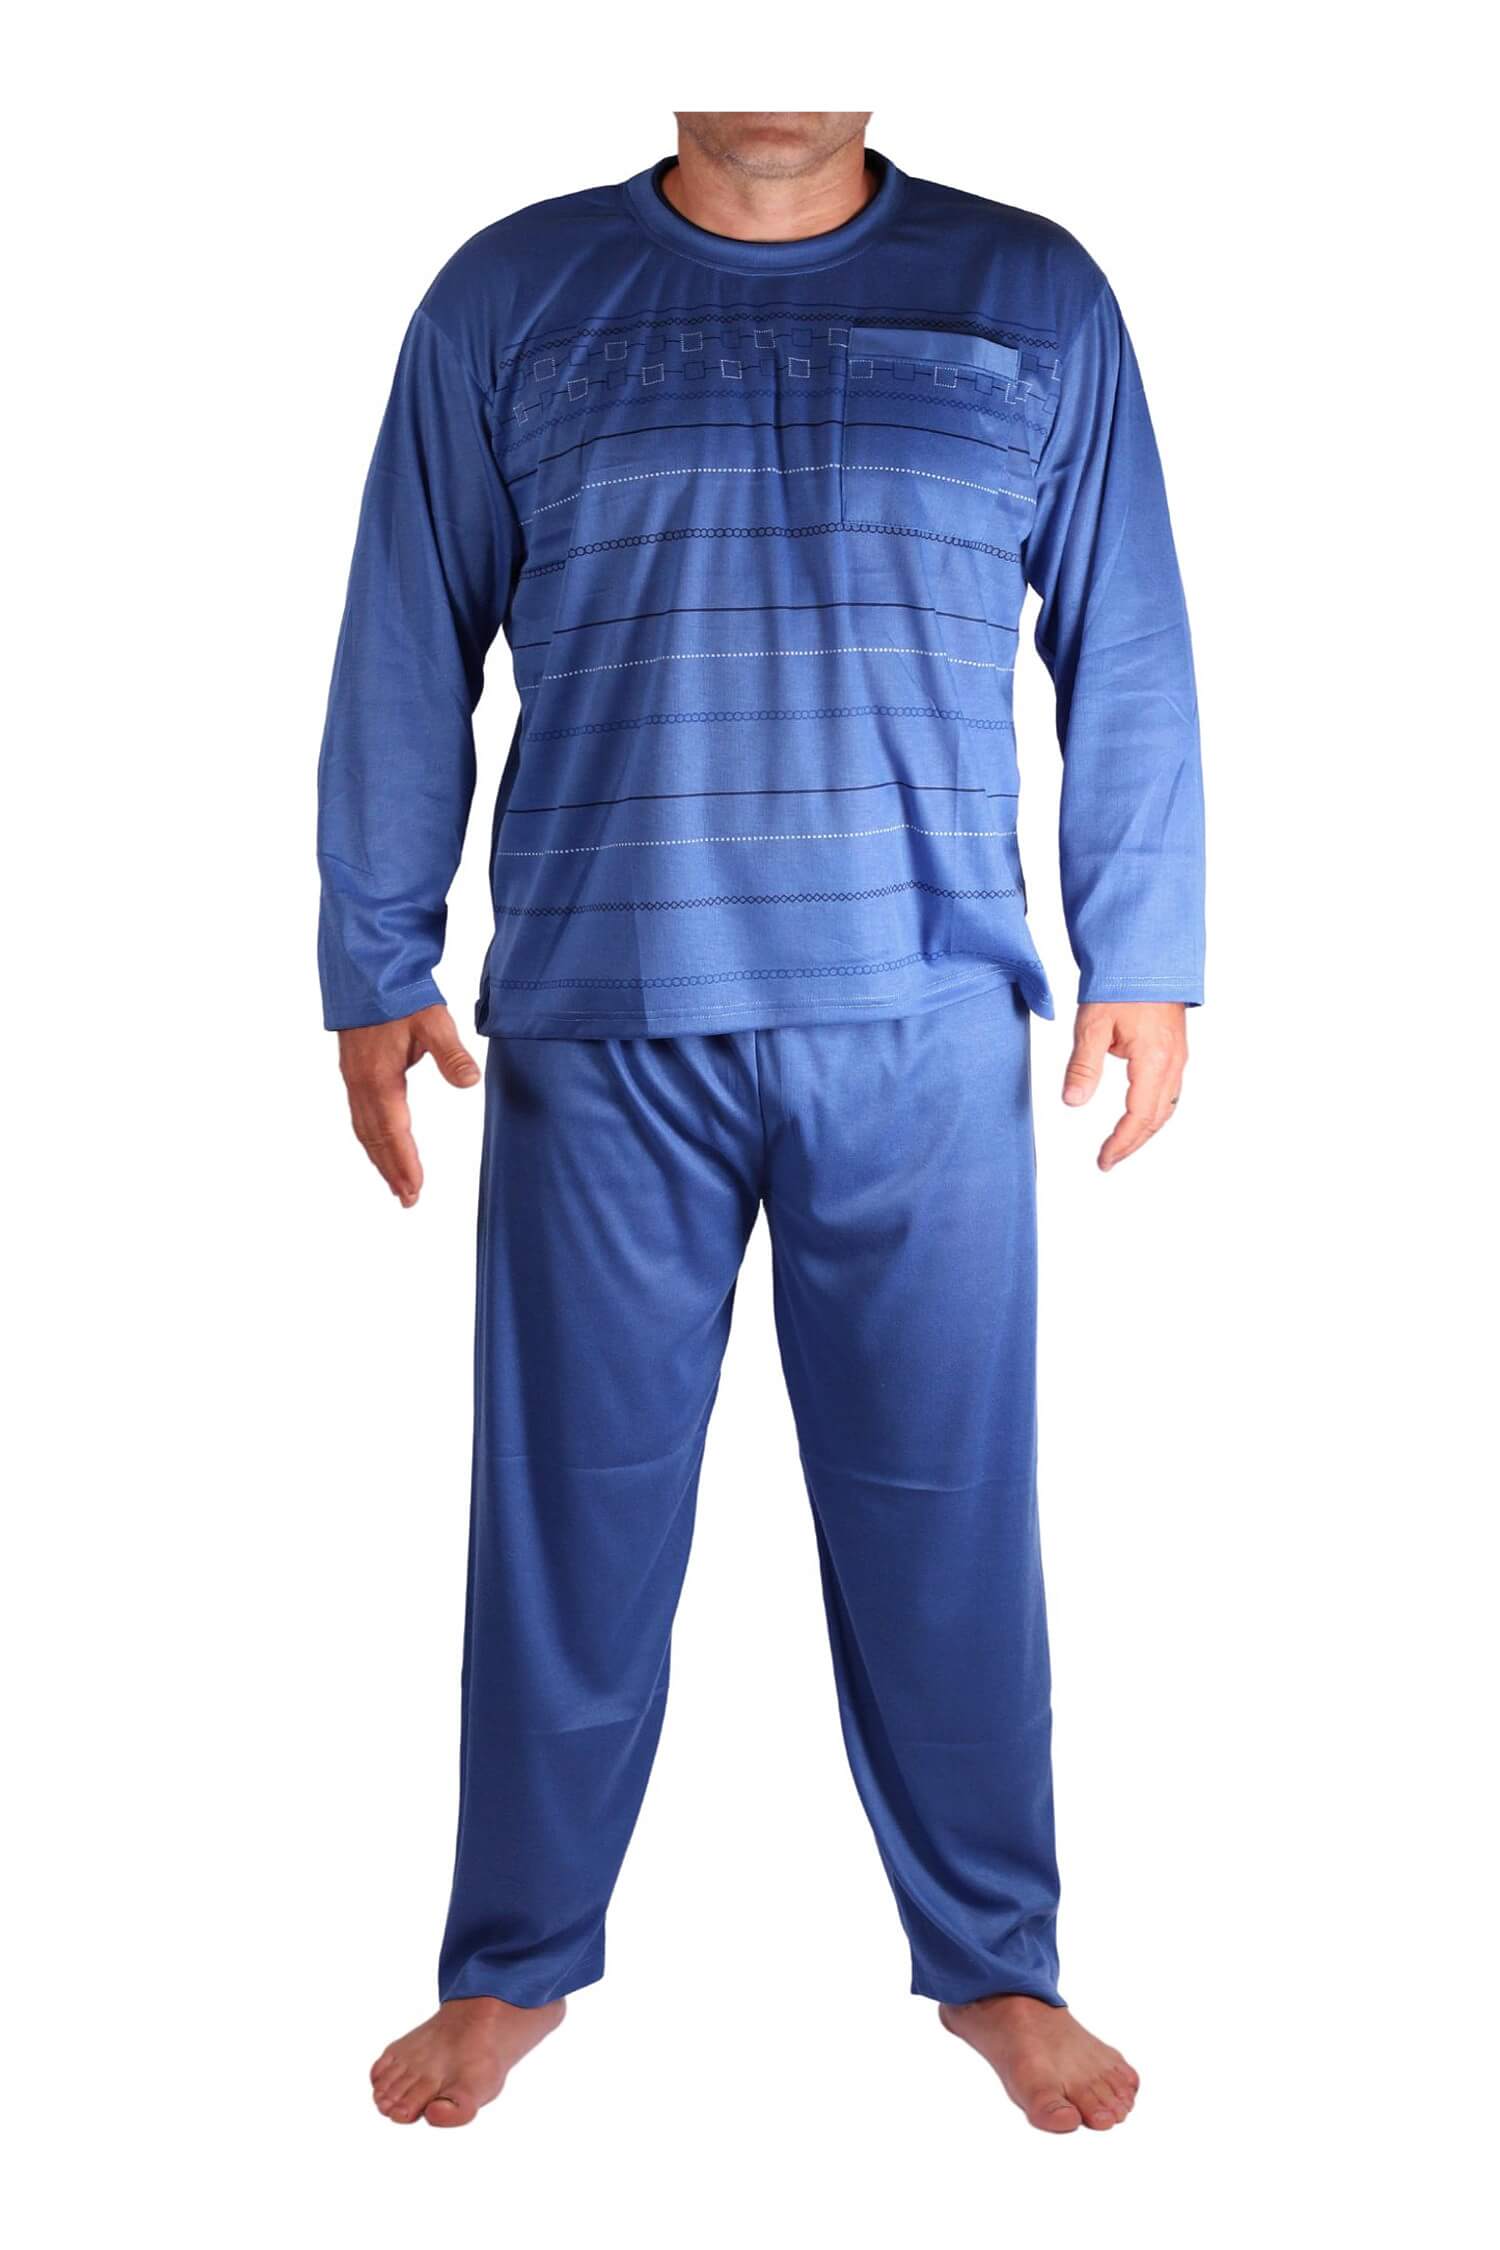 Milan pyžamo pánské dlouhé V1611 modrá XXL